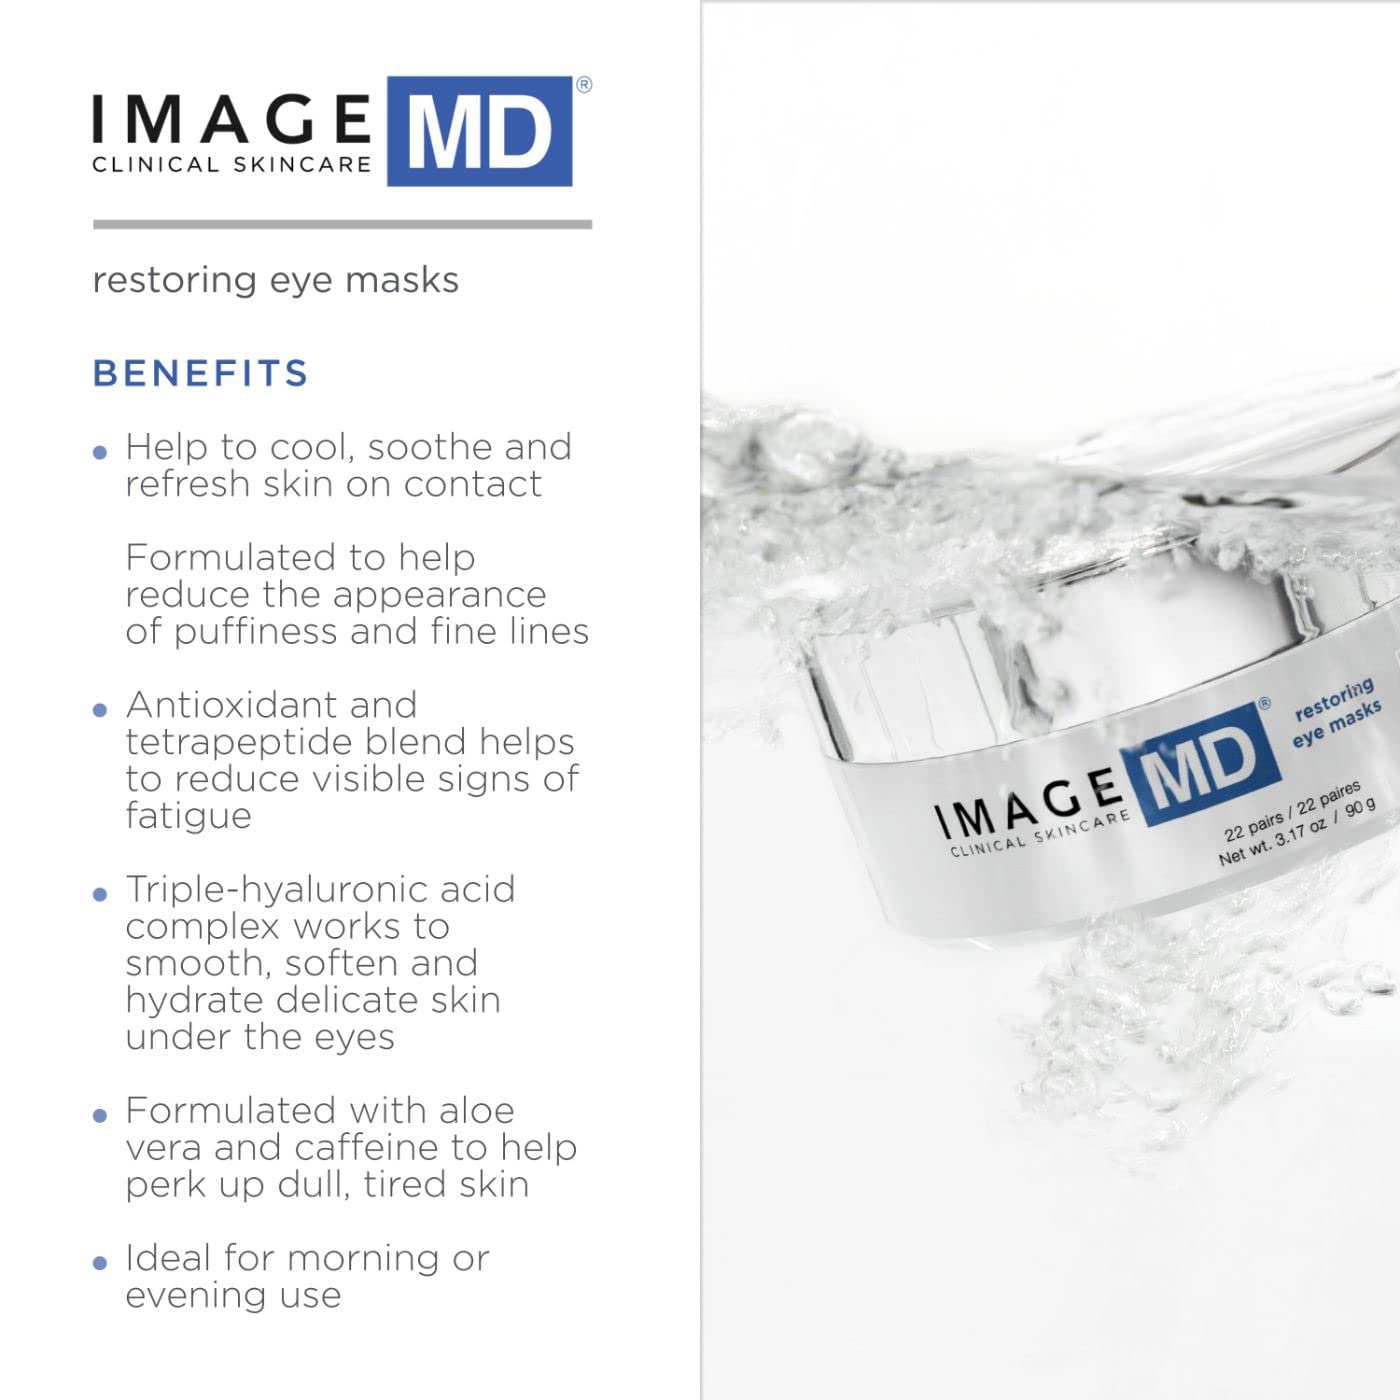 IMAGE Skincare MD Restoring Eye Masks, 22 ct.